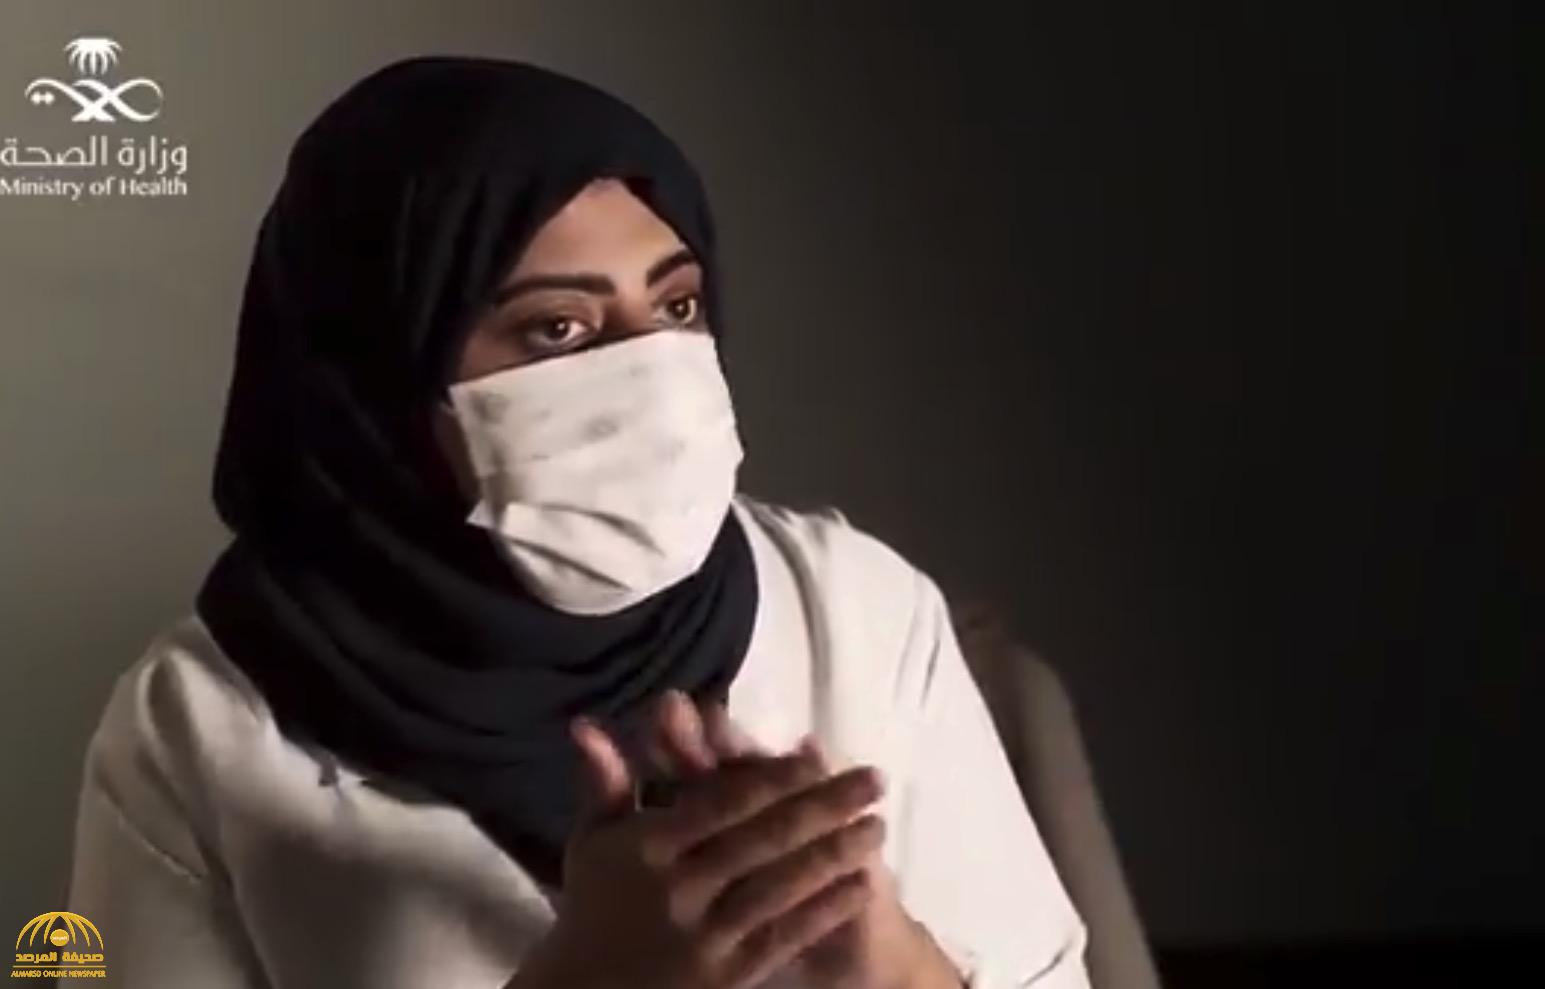 "قفزت في الماء دون تردد".. بالفيديو .. "ممرضة" سعودية تروي قصة إنقاذ طفلتين بشاطئ "بيش" وتصف شعورها